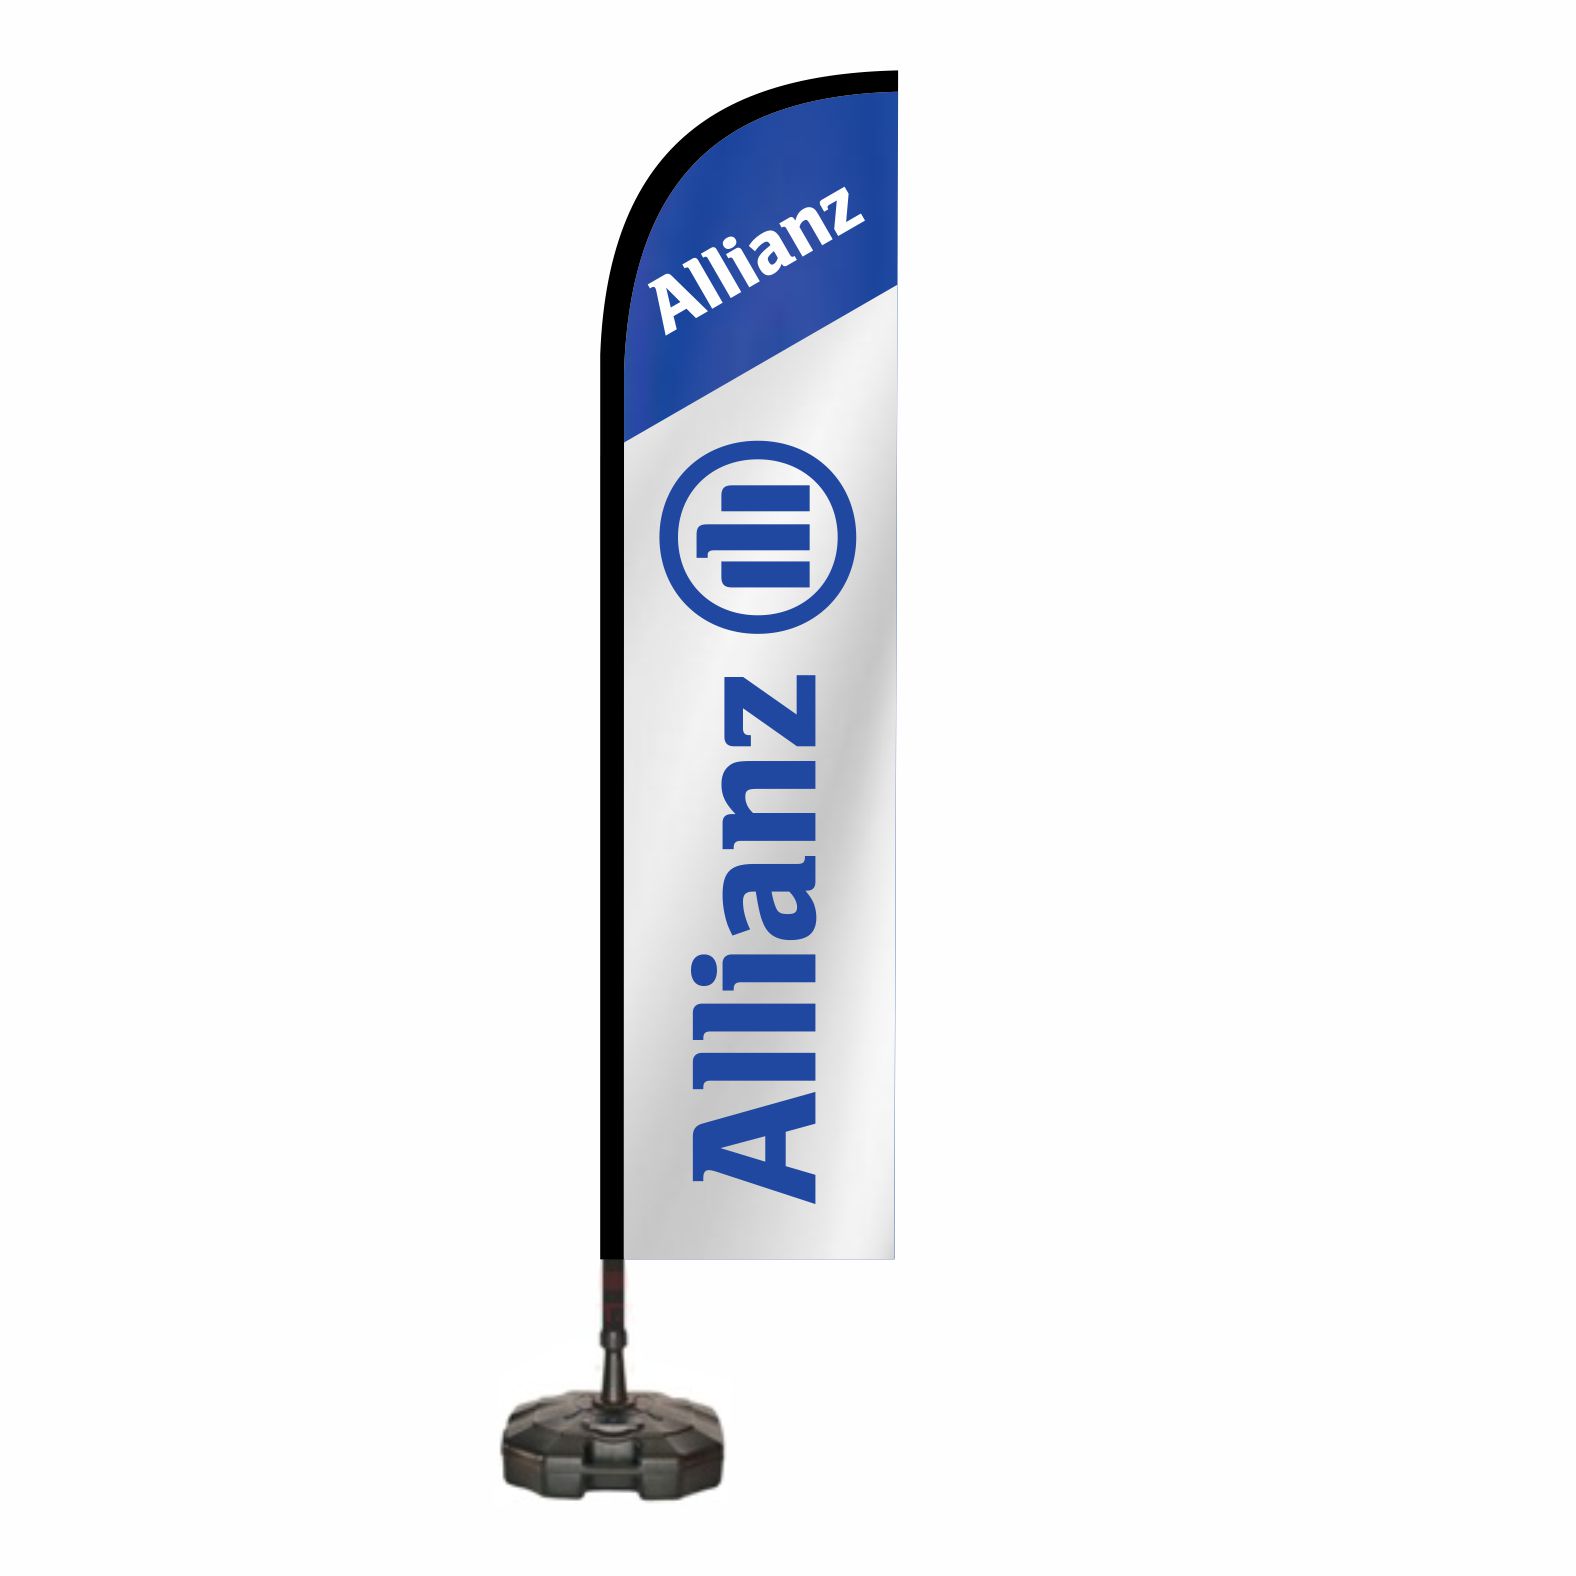 Allianz Sigorta nerede satlr